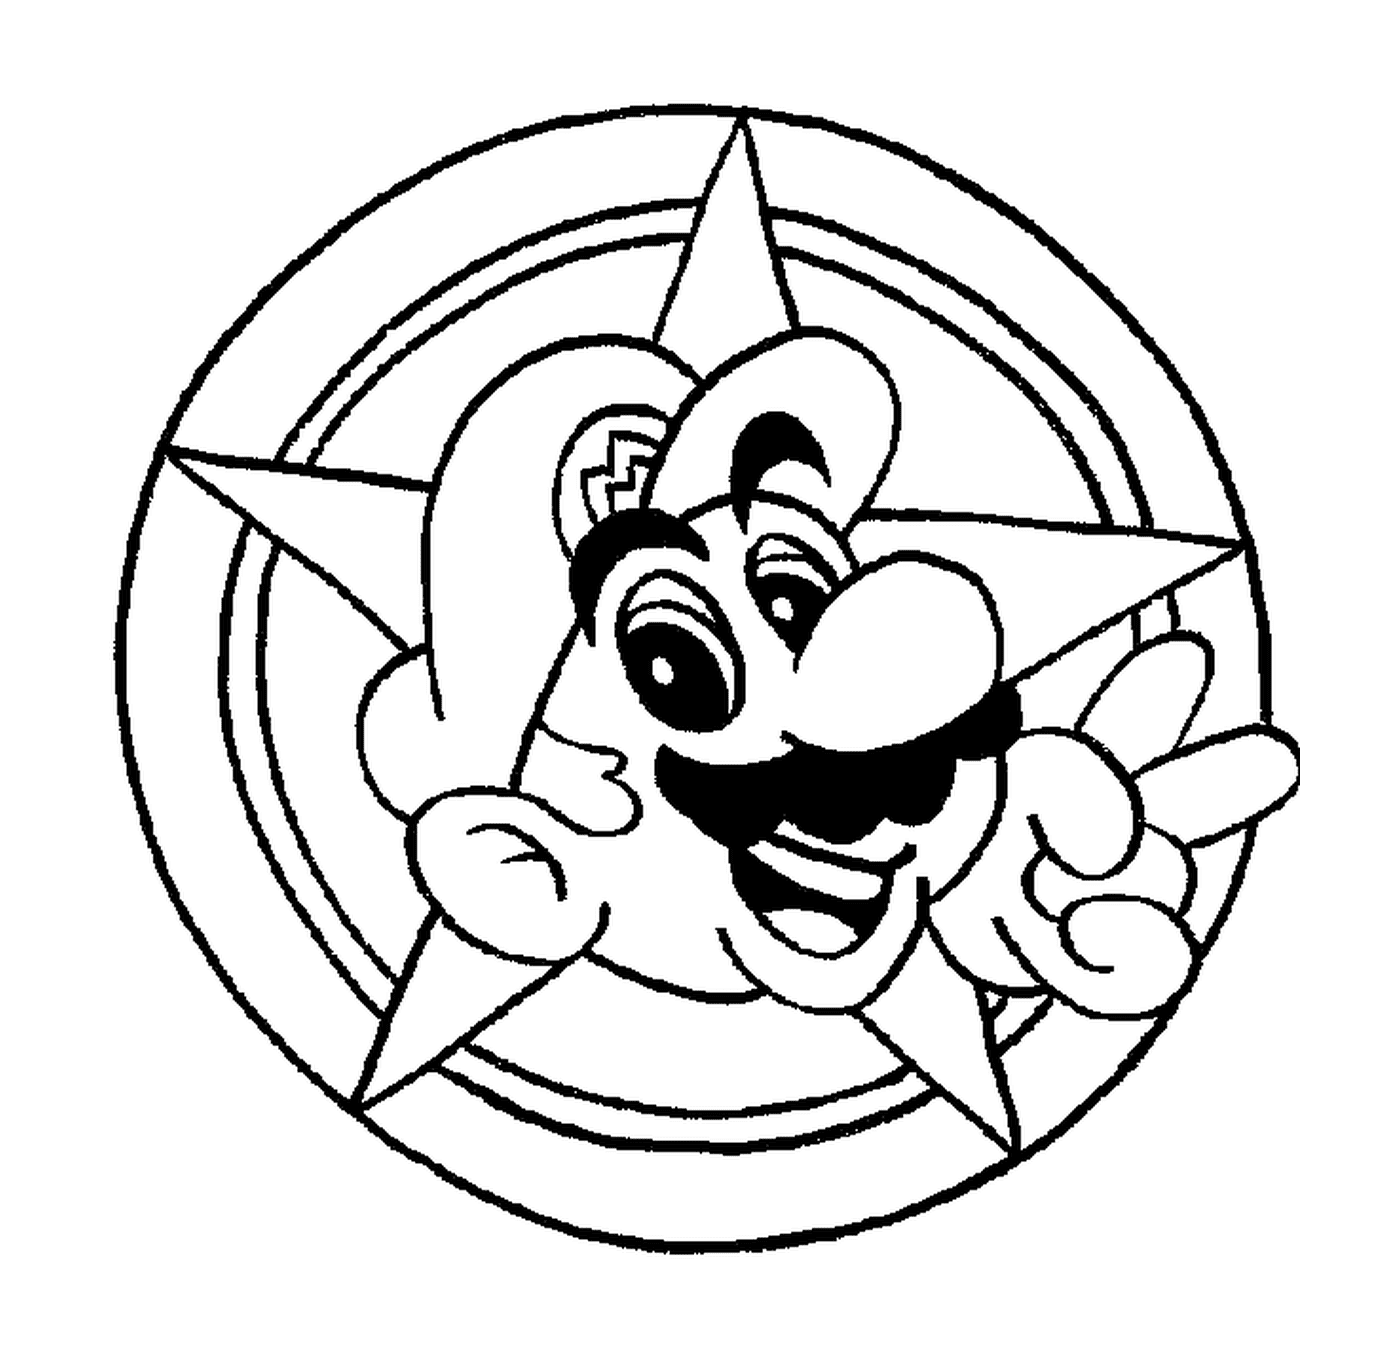  Голова Марио в круге 